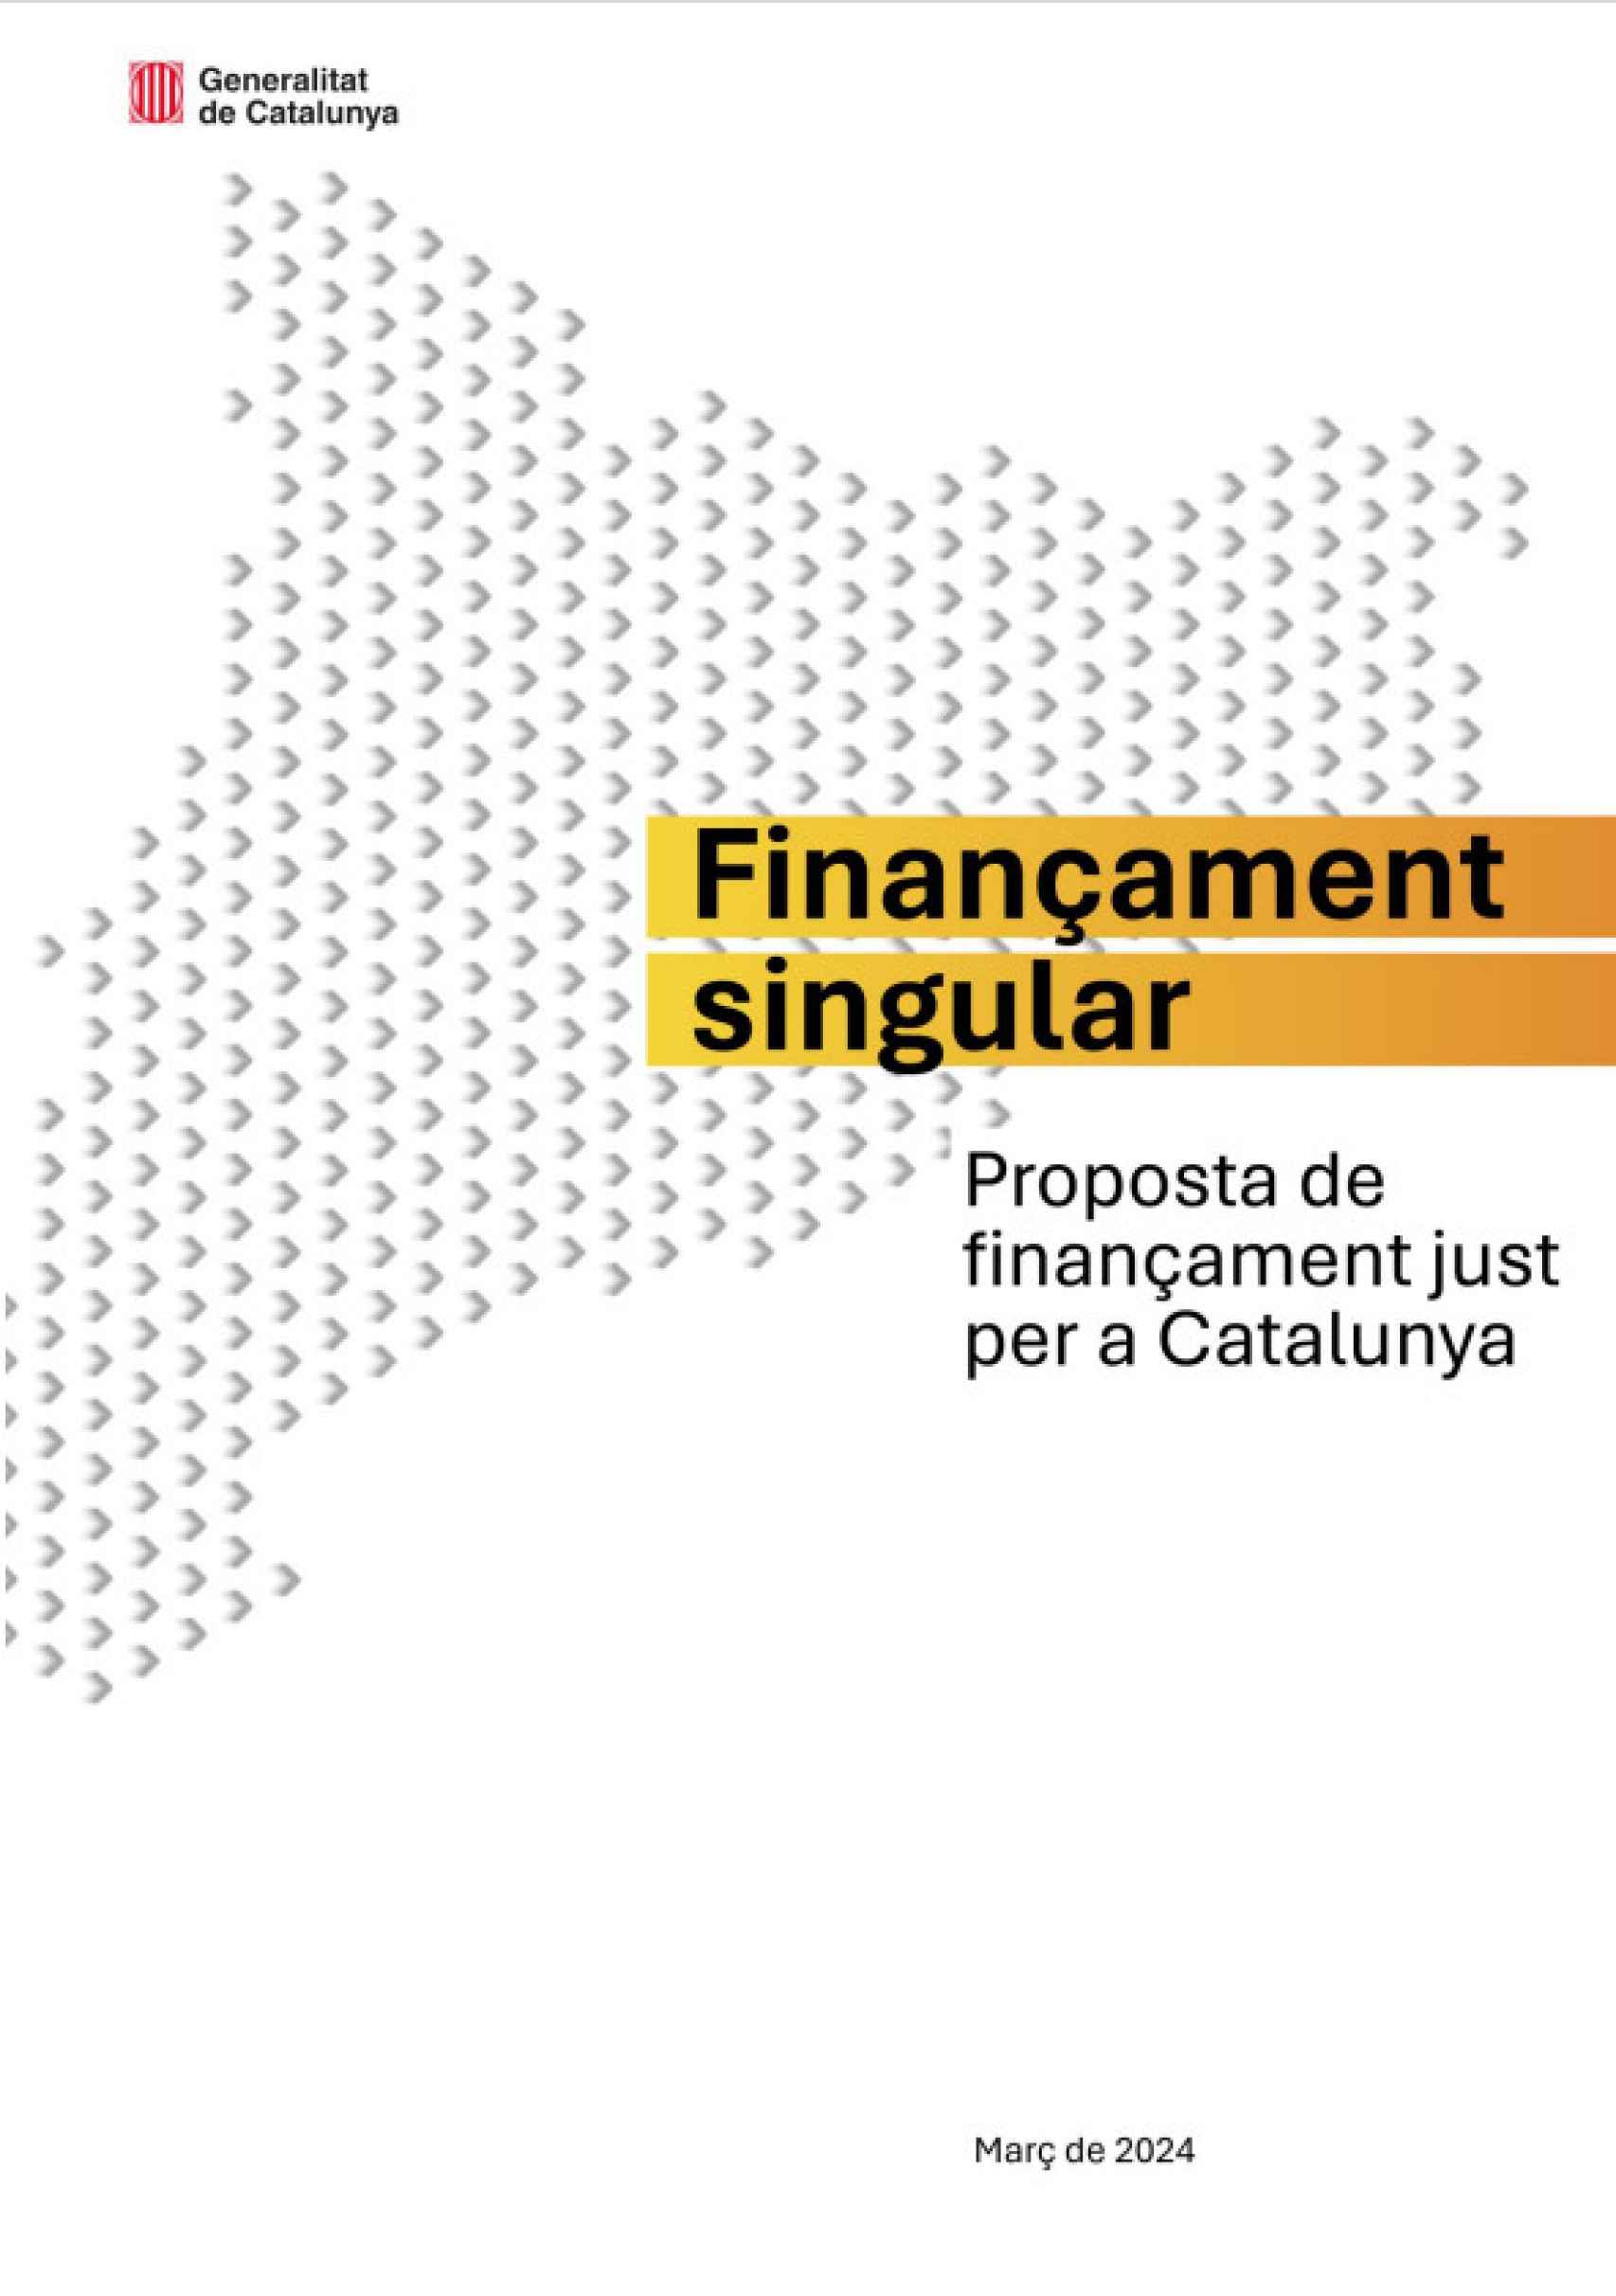 Portada de la Propuesta del 'Govern' para la Financiación Singular de Cataluña.